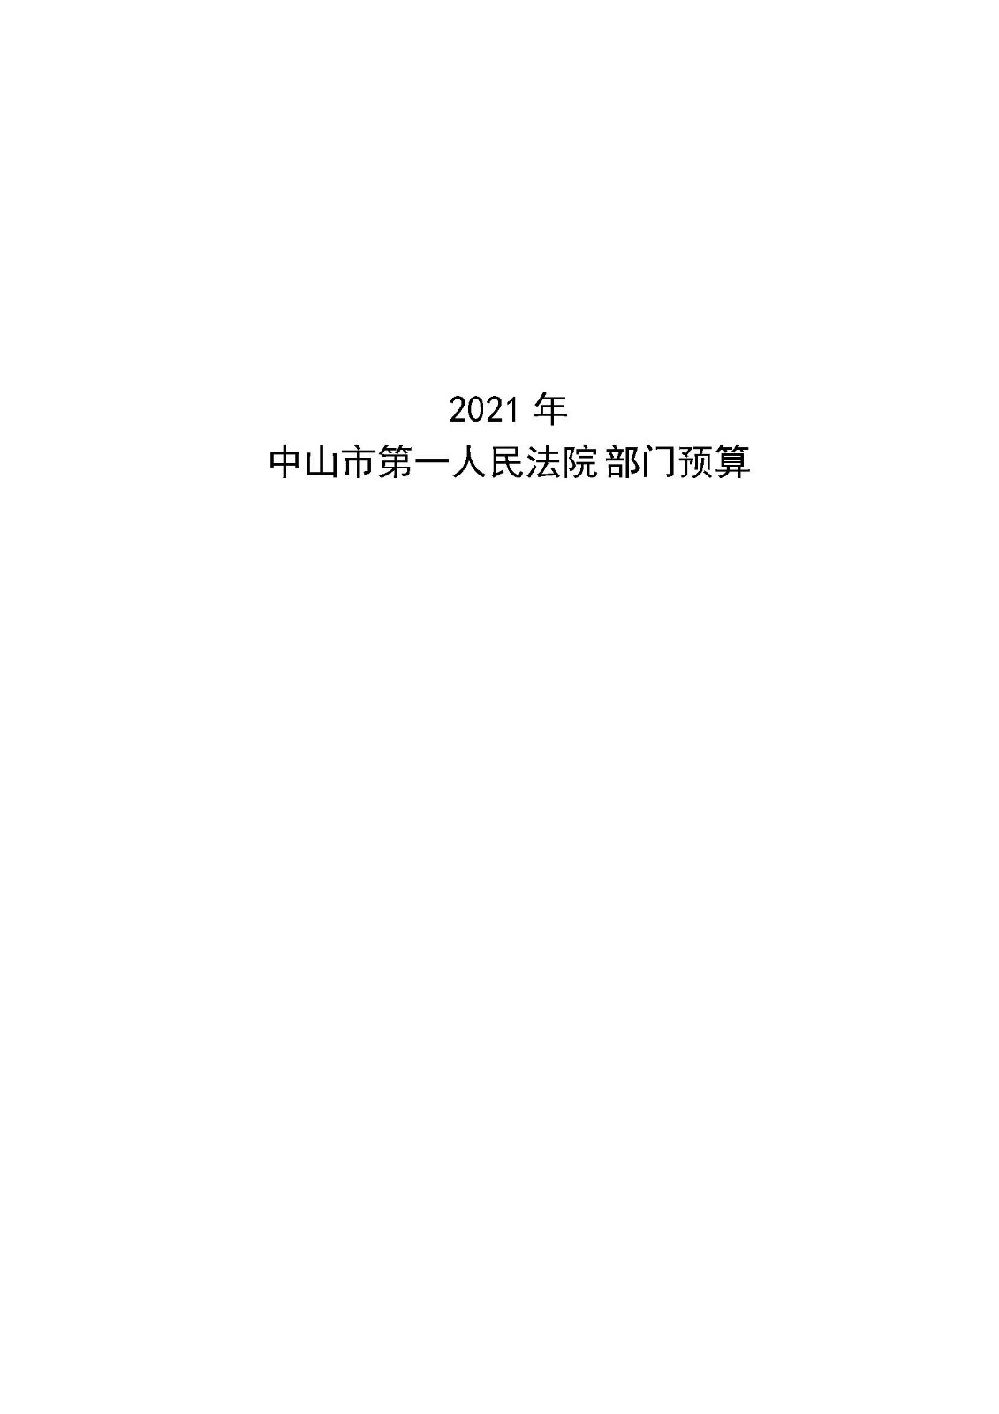 2021年中山市第一人民法院部门预算_页面_01.jpg